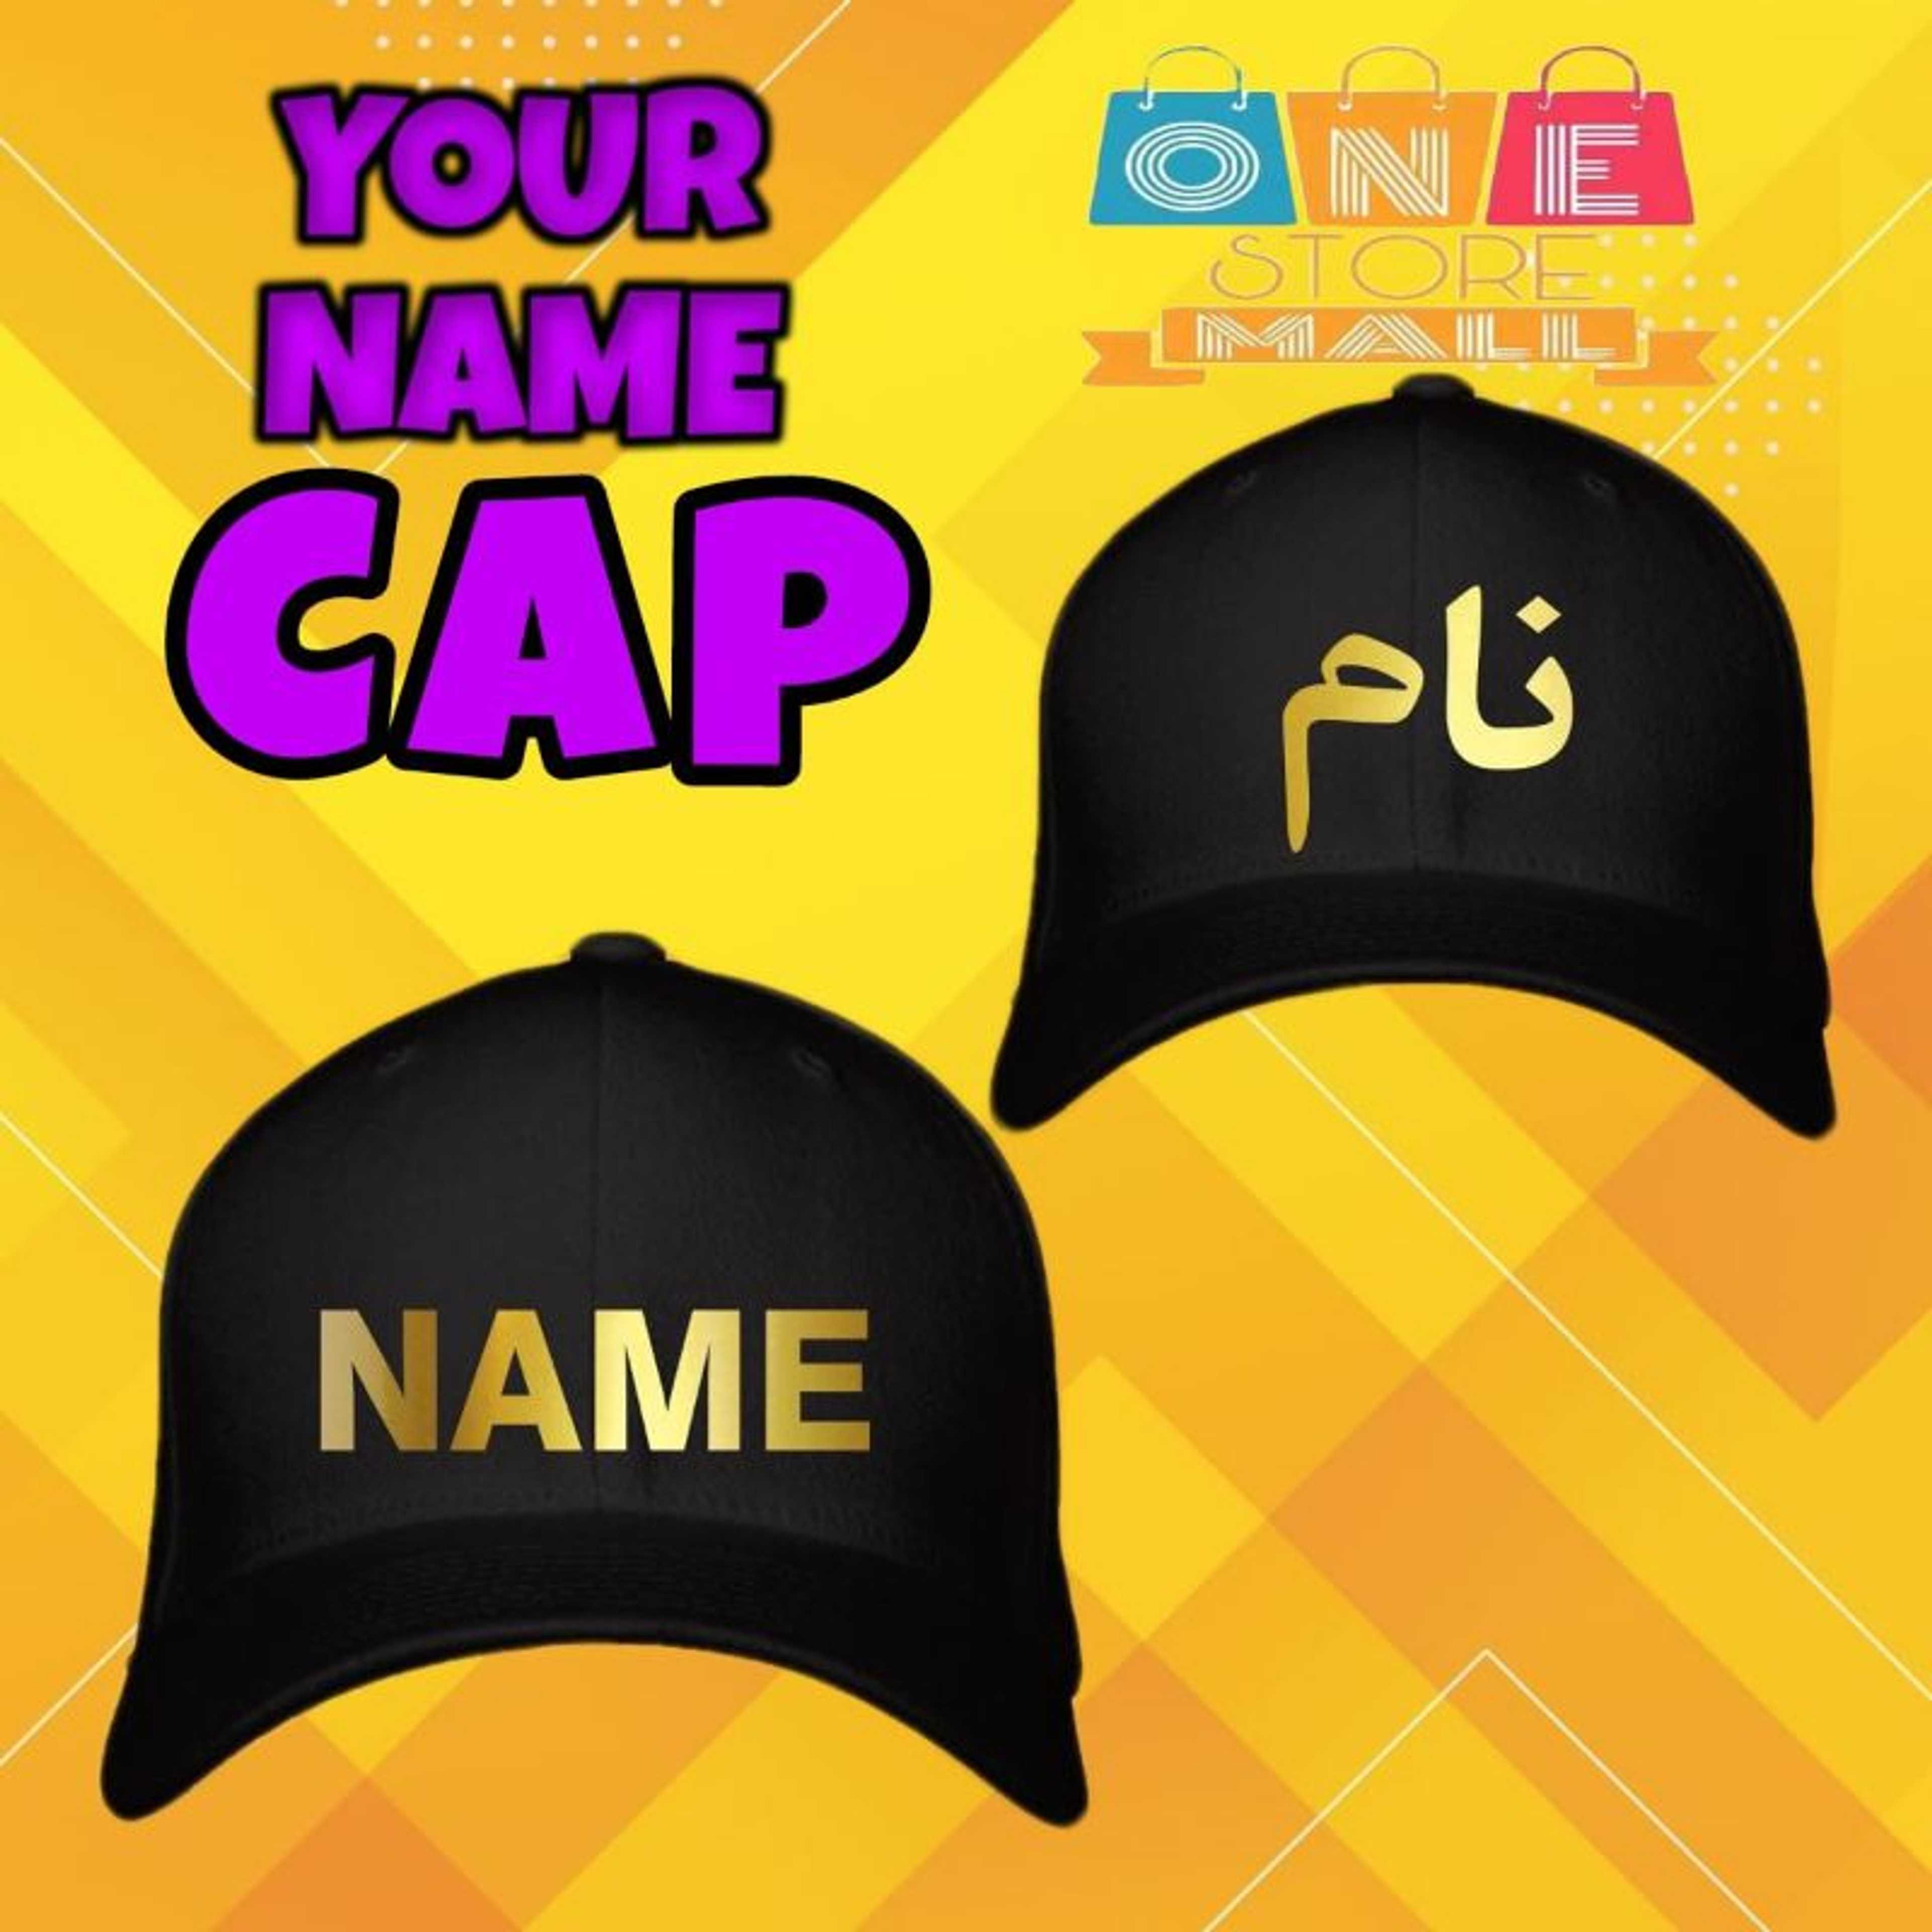 Name T-Shirt with Name Cap